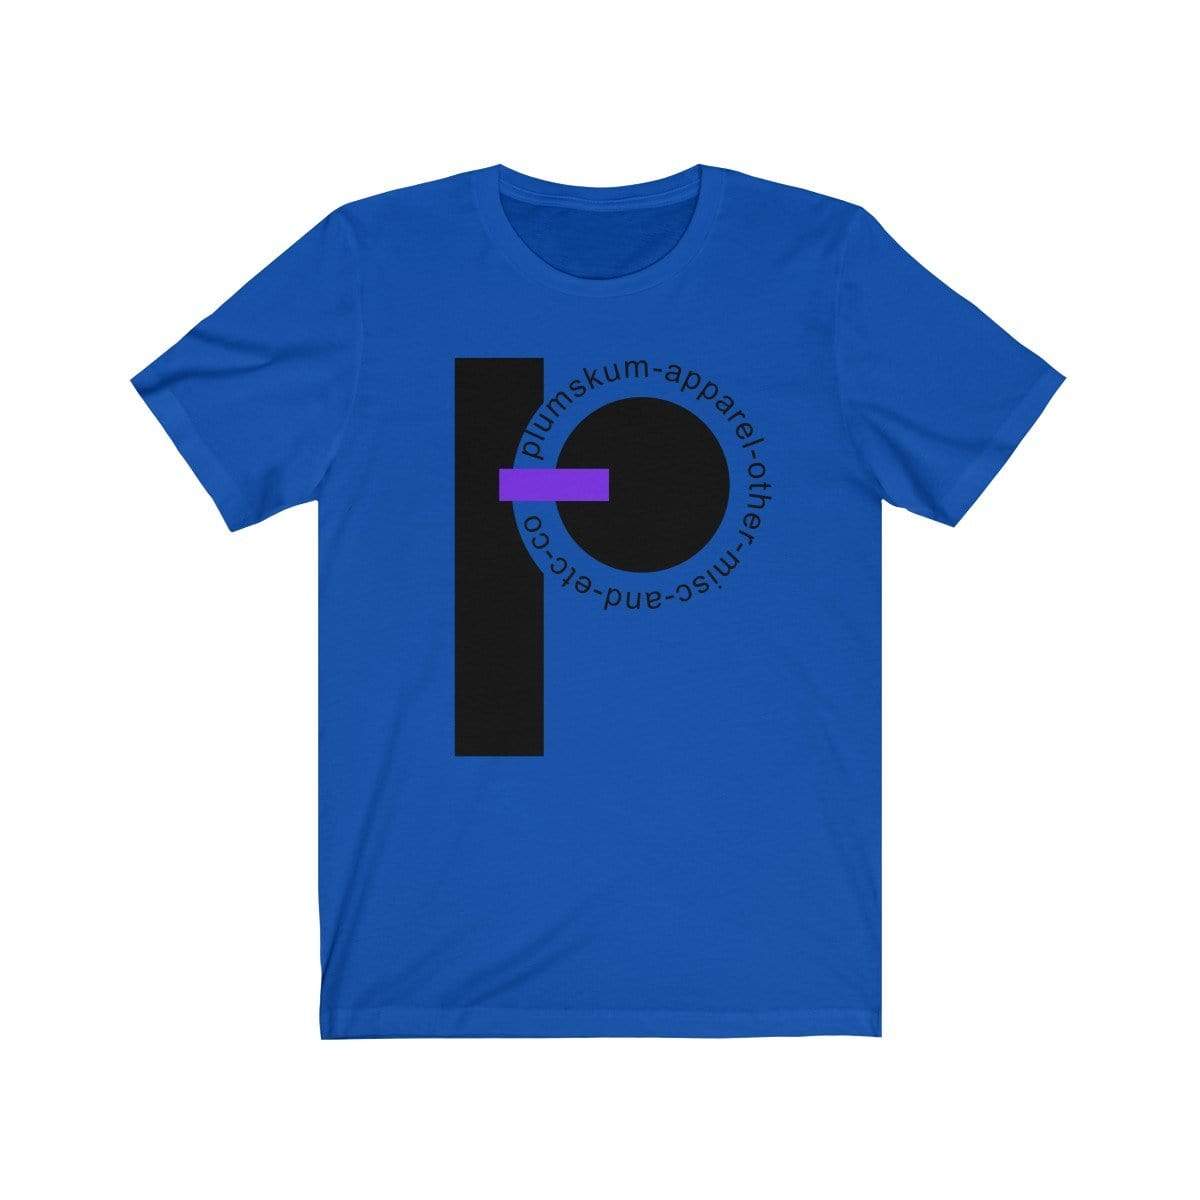 Printify T-Shirt True Royal / XS Plumskum  Etc. Co. TShirt